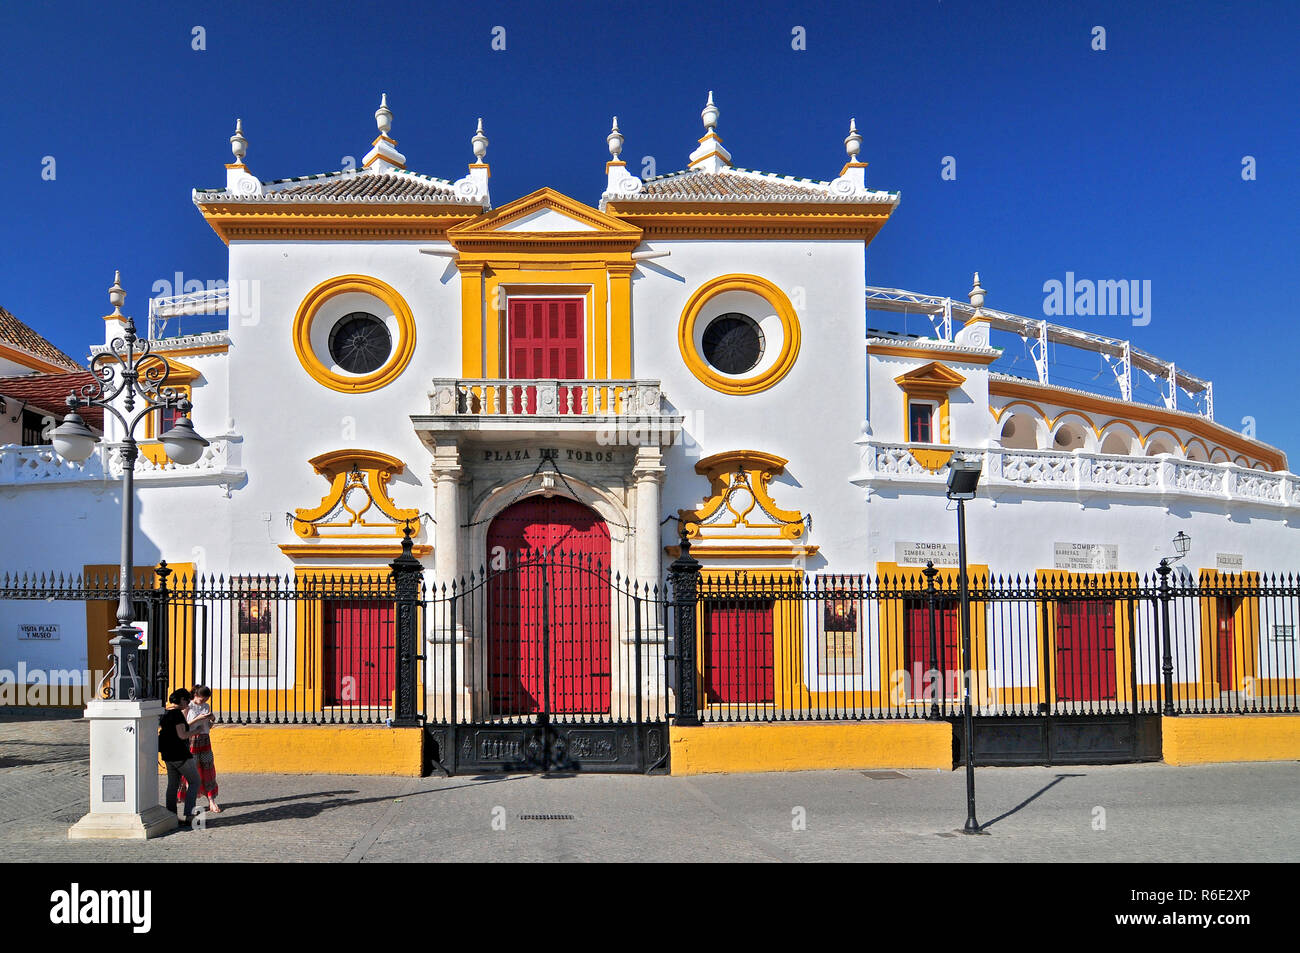 Spain, Andalusia, Sevilla, Plaza De Toros De La Real Maestranza De Caballeria De Sevilla, The Baroque Facade Of The Bullring Stock Photo